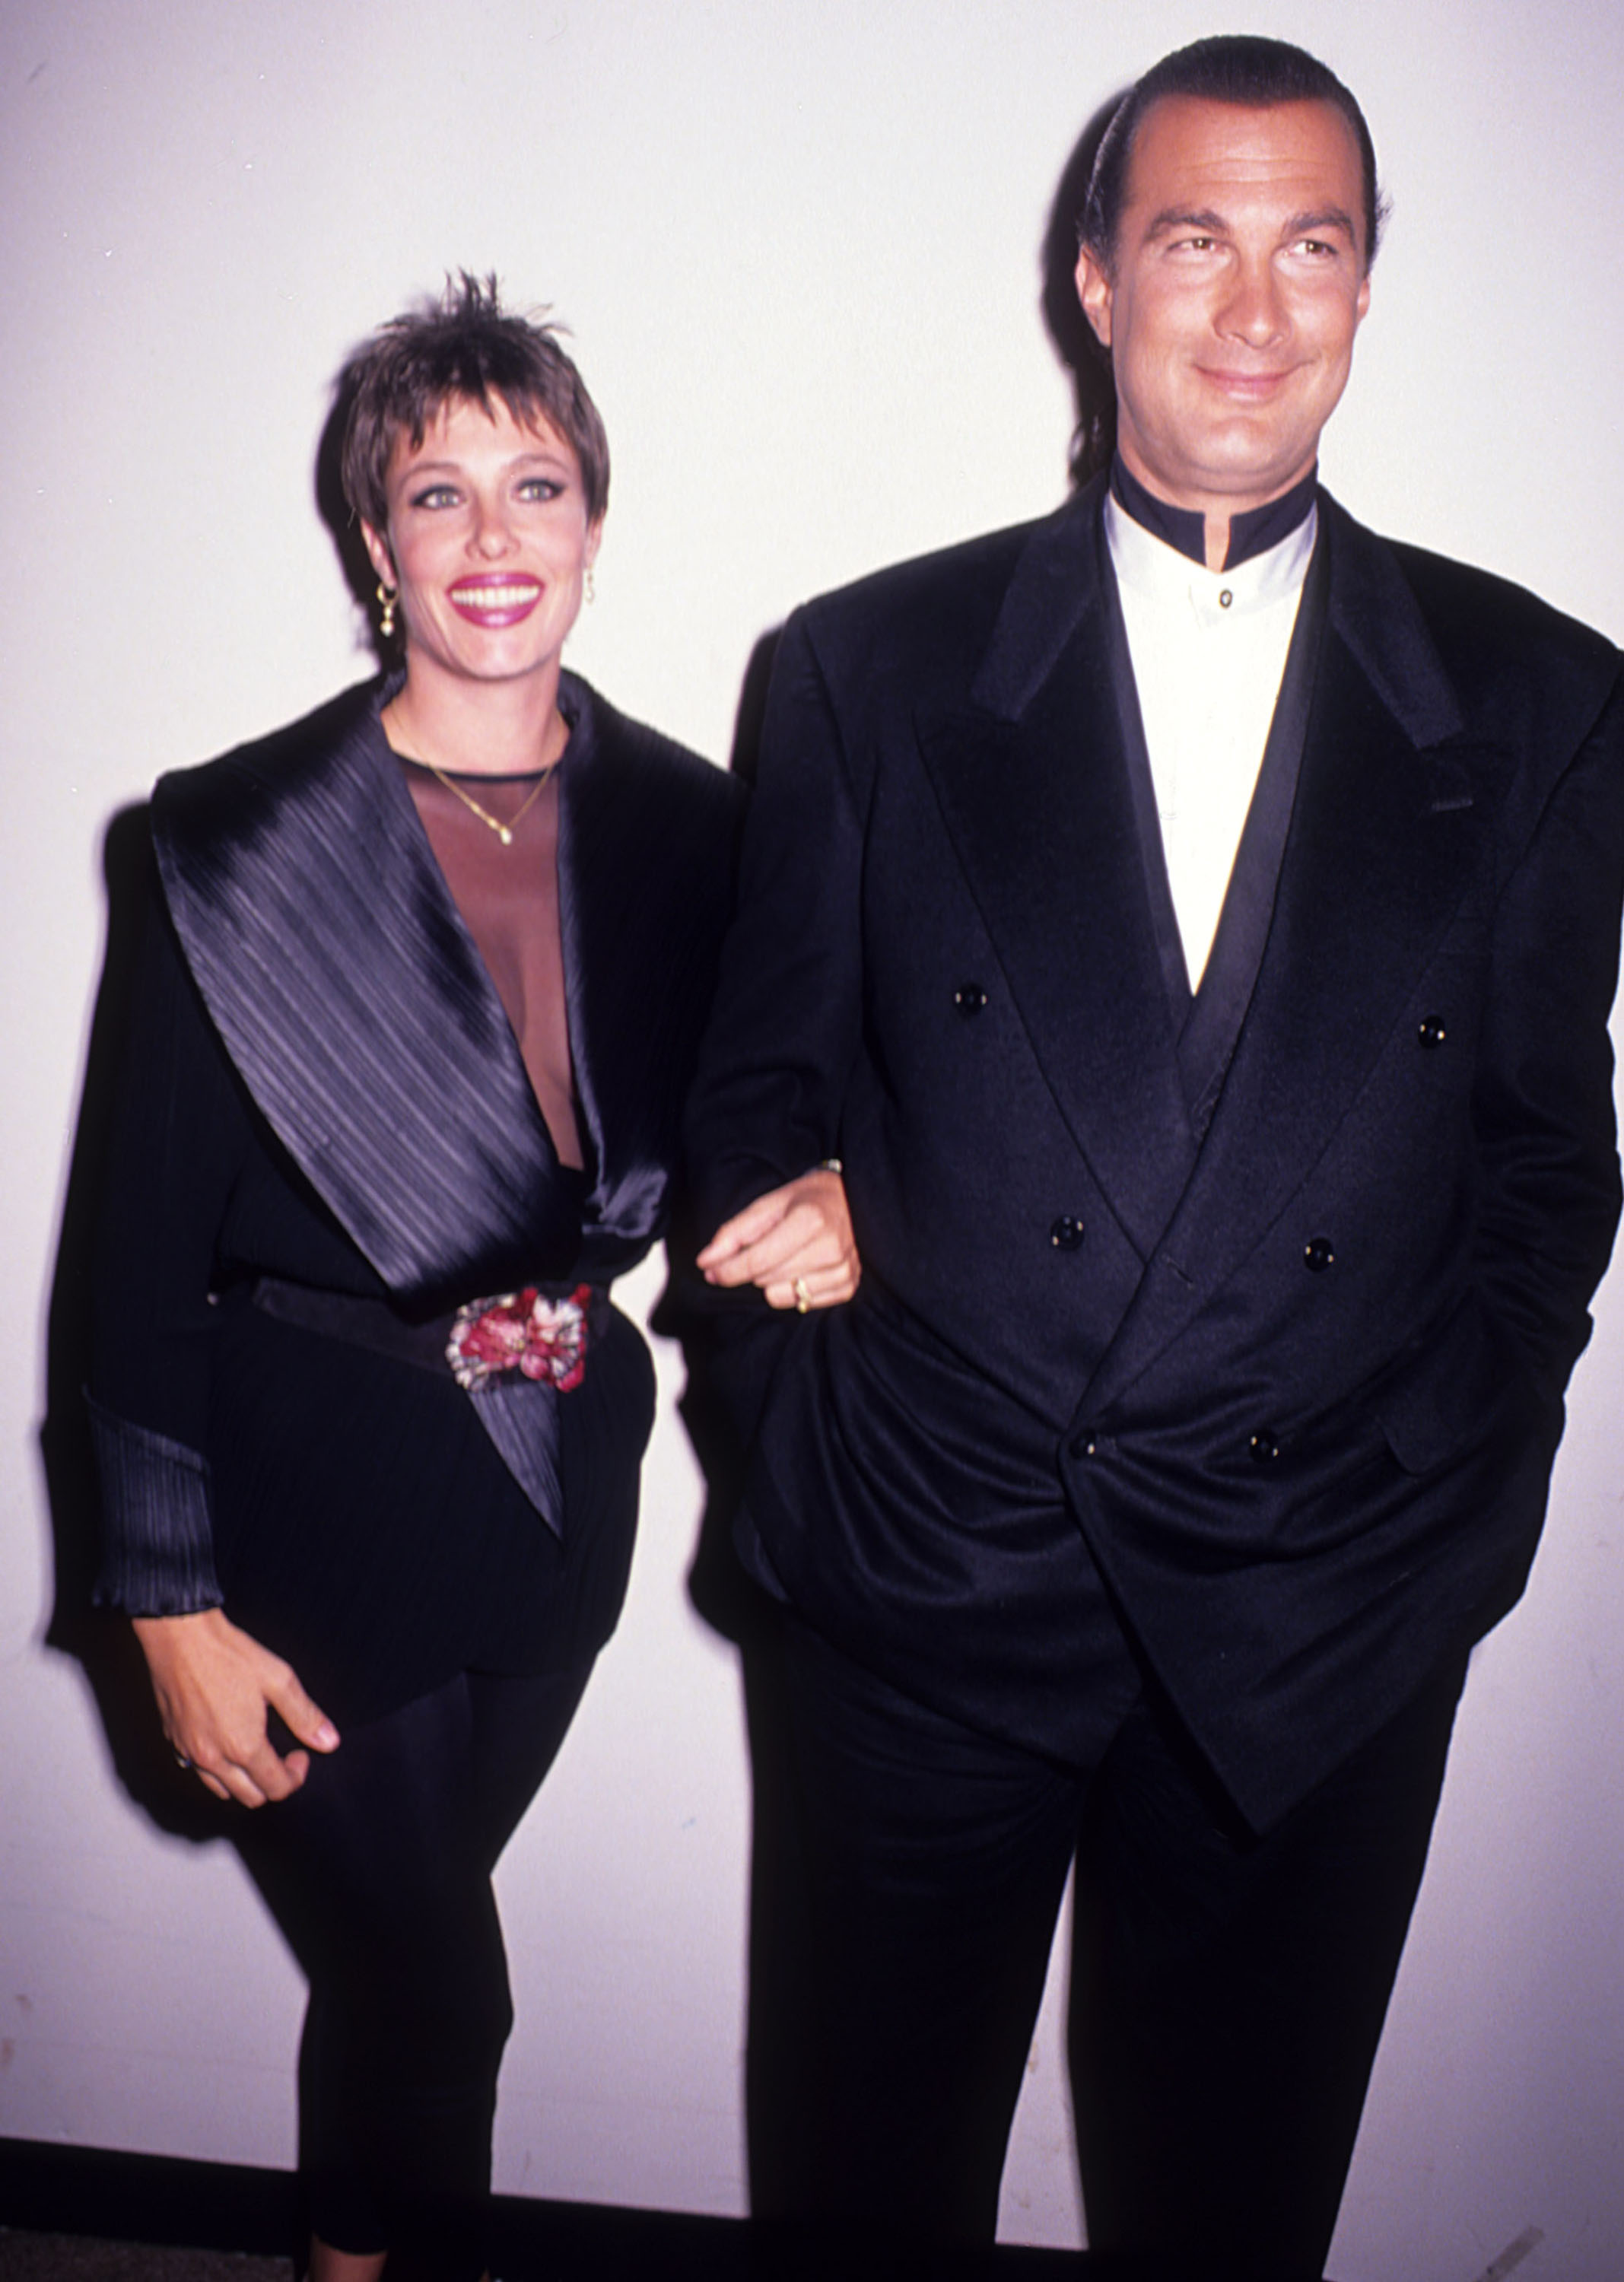 Kelly LeBrock et Steven Seagal à la première du film "Out for Justice", 1991 | Sources : Getty Images